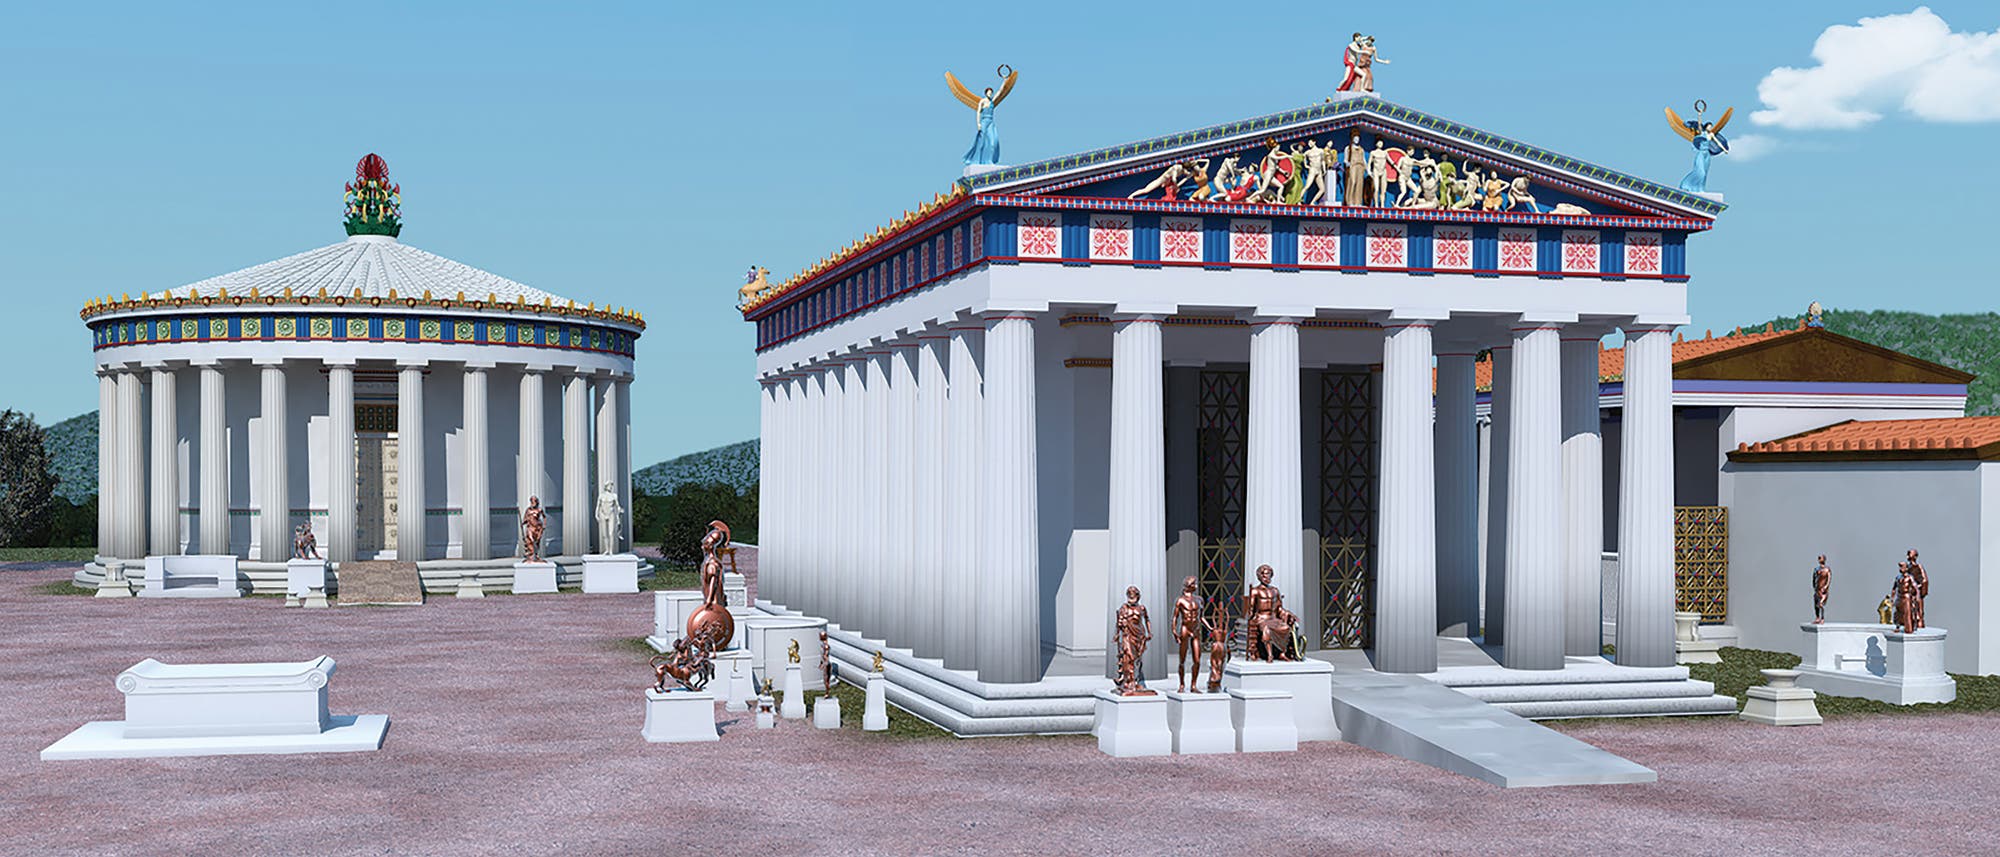 Der Asklepiostempel von Epidauros (künstlerische Darstellung)